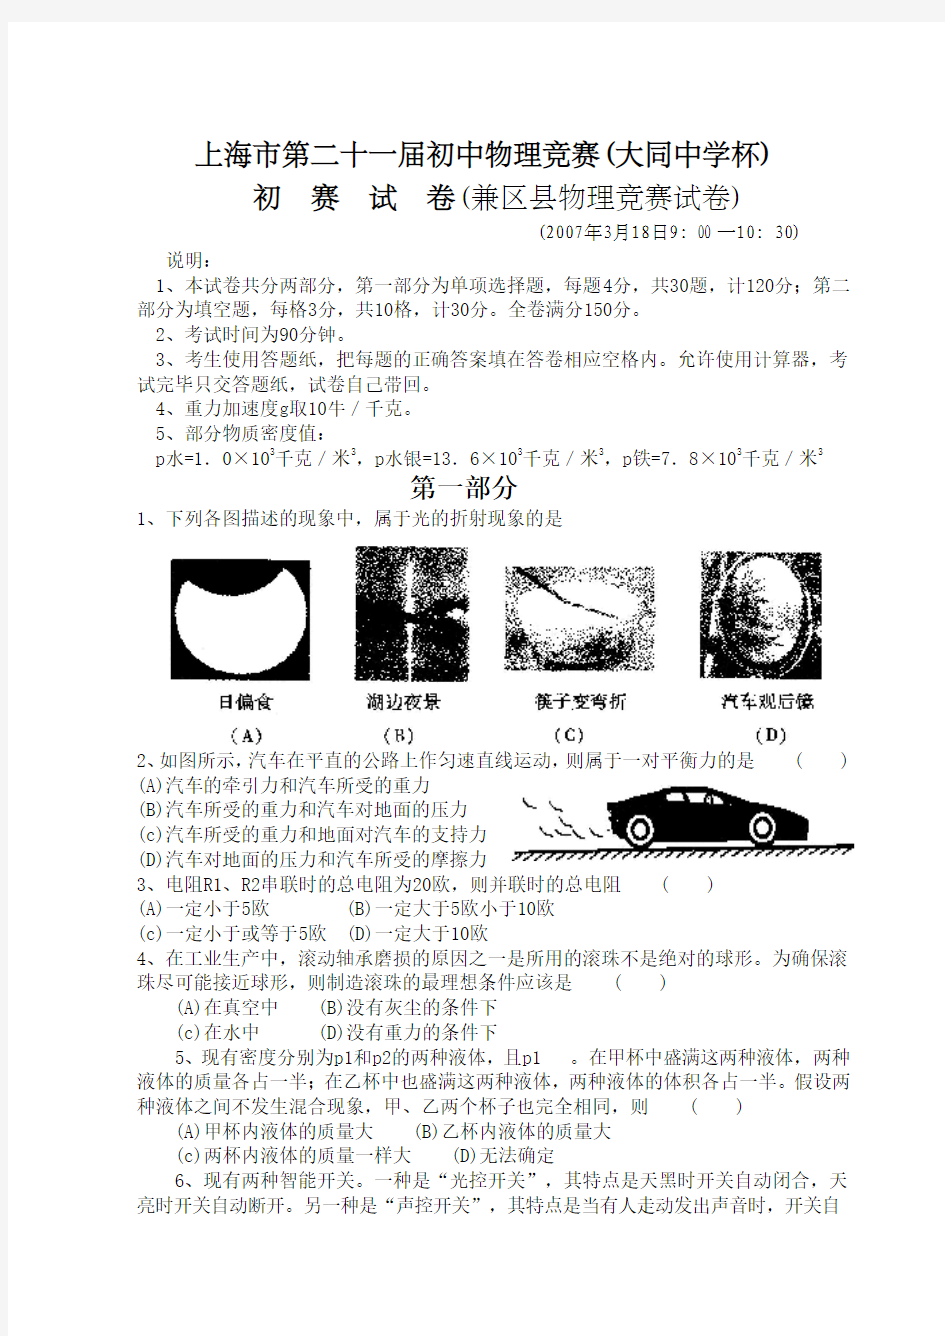 上海市第二十一届初中物理竞赛(大同中学杯)初赛试卷及答案